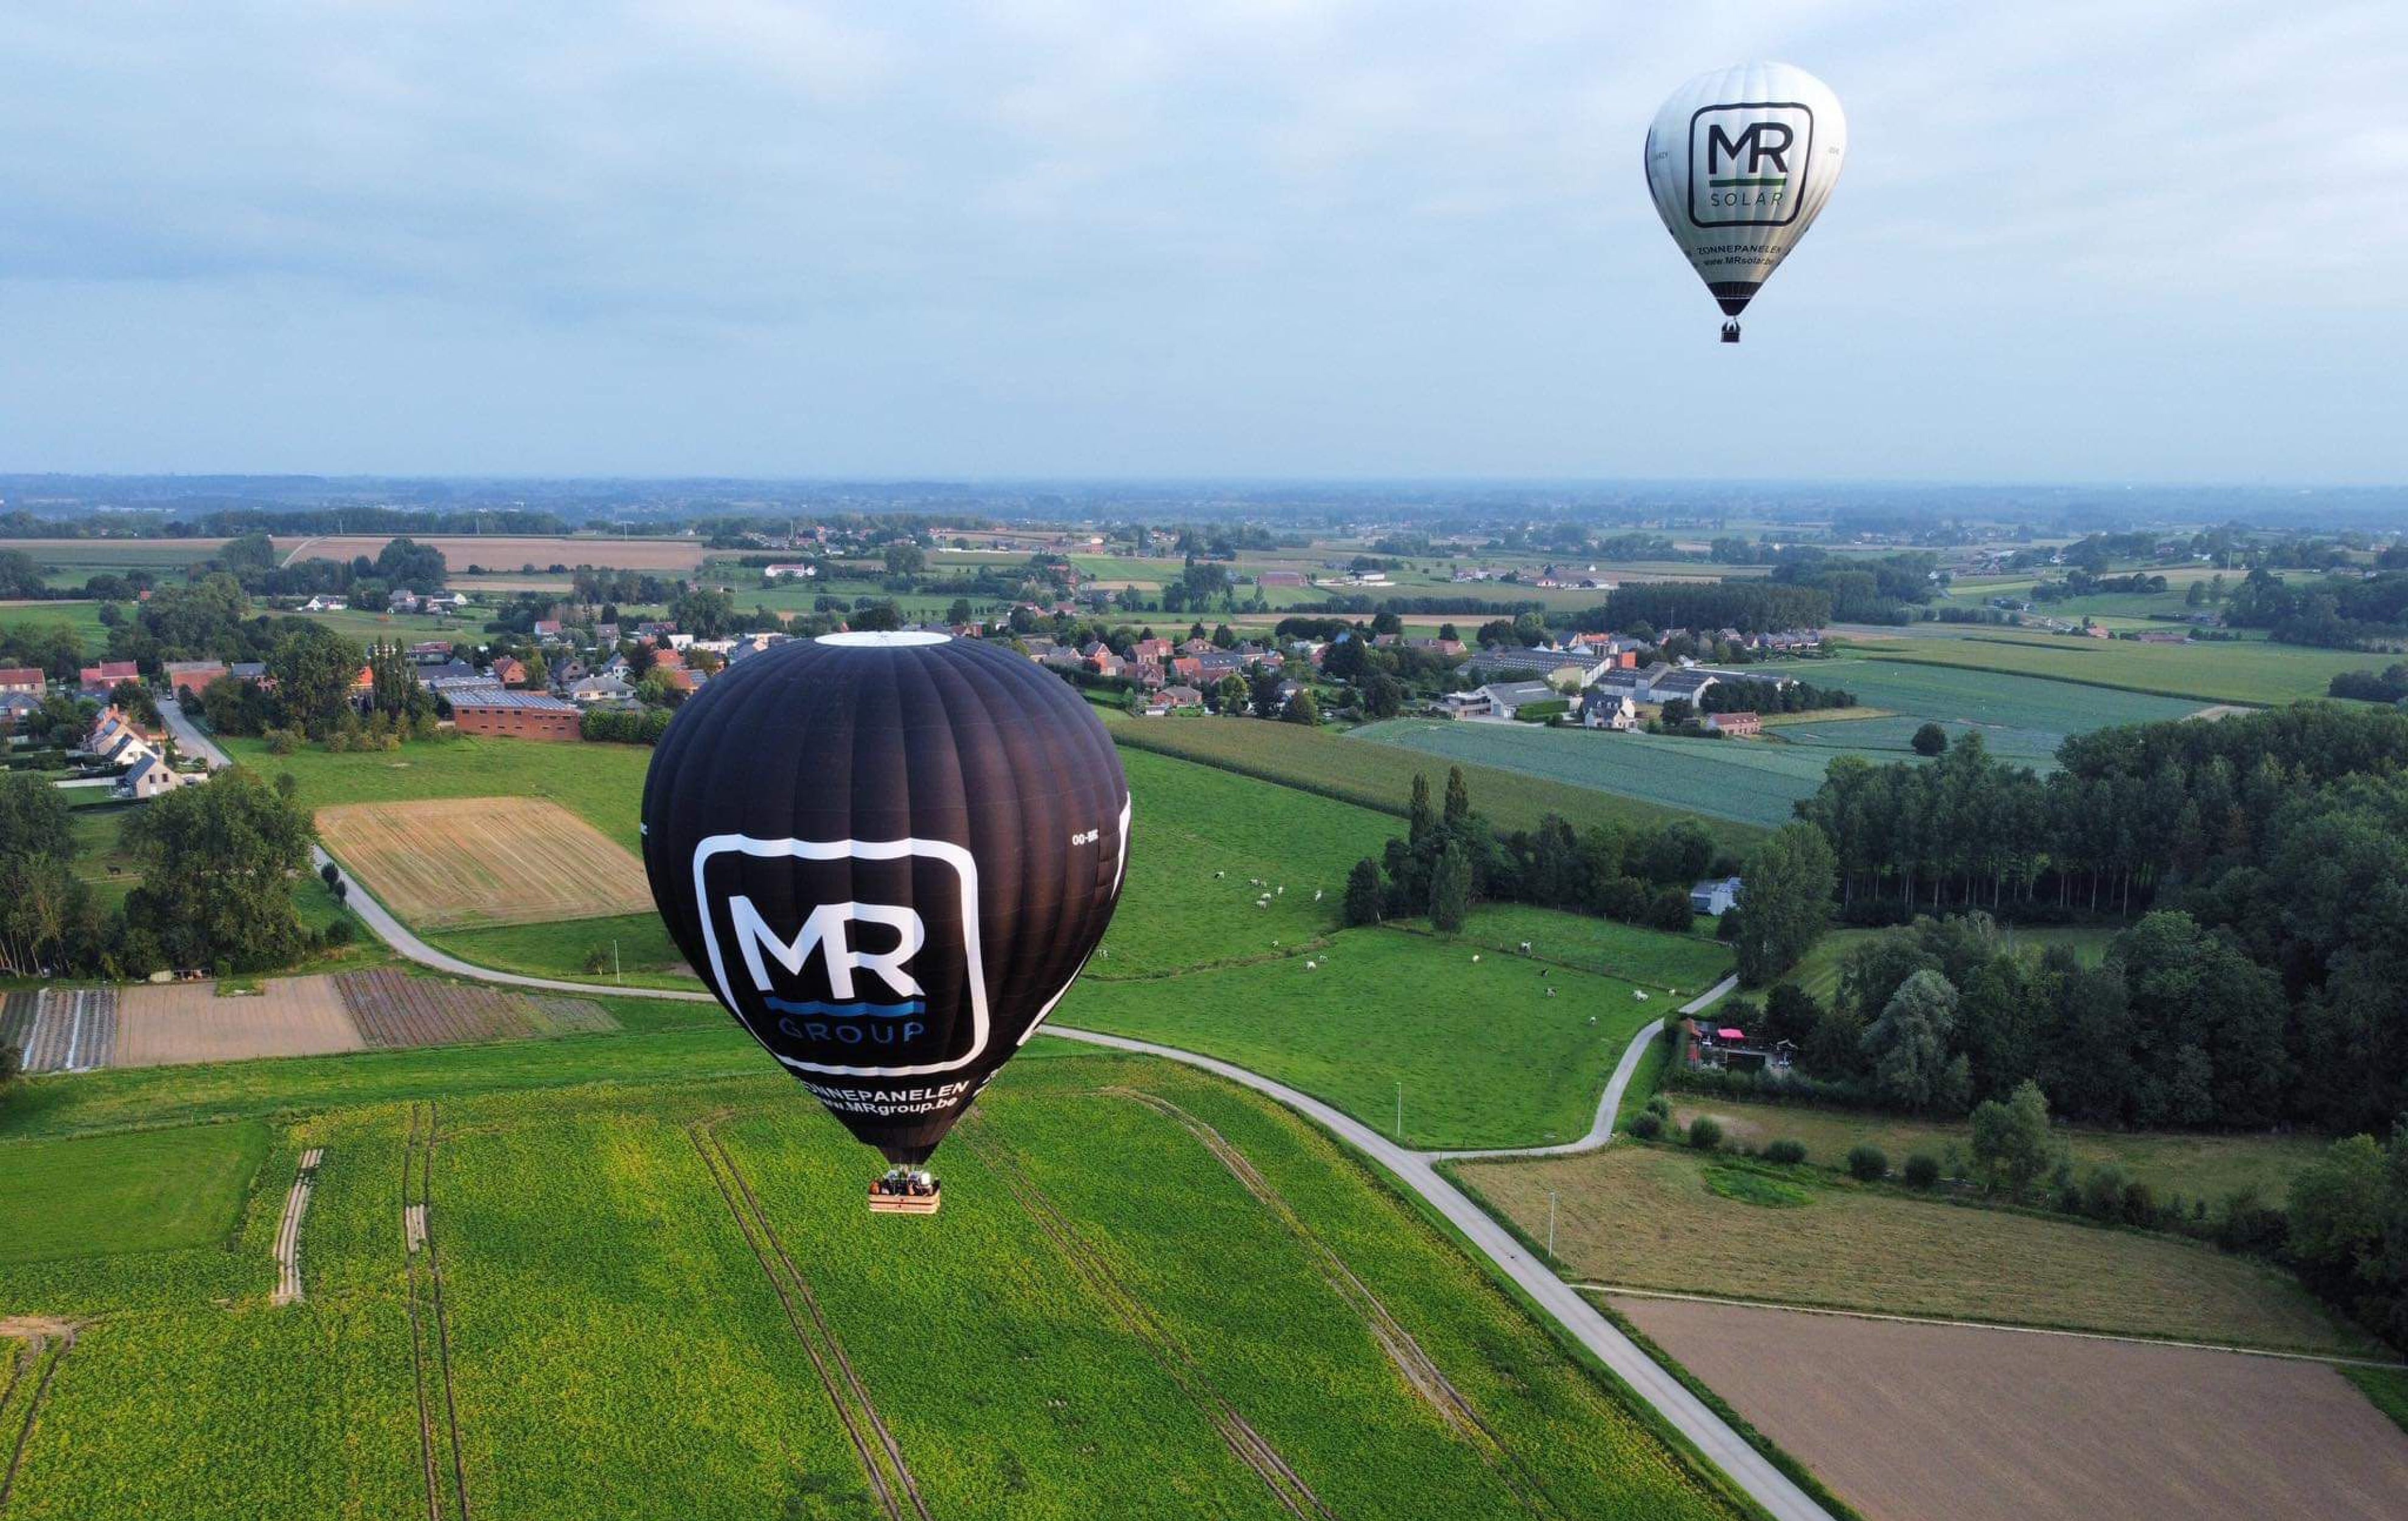 MR Solar ballon